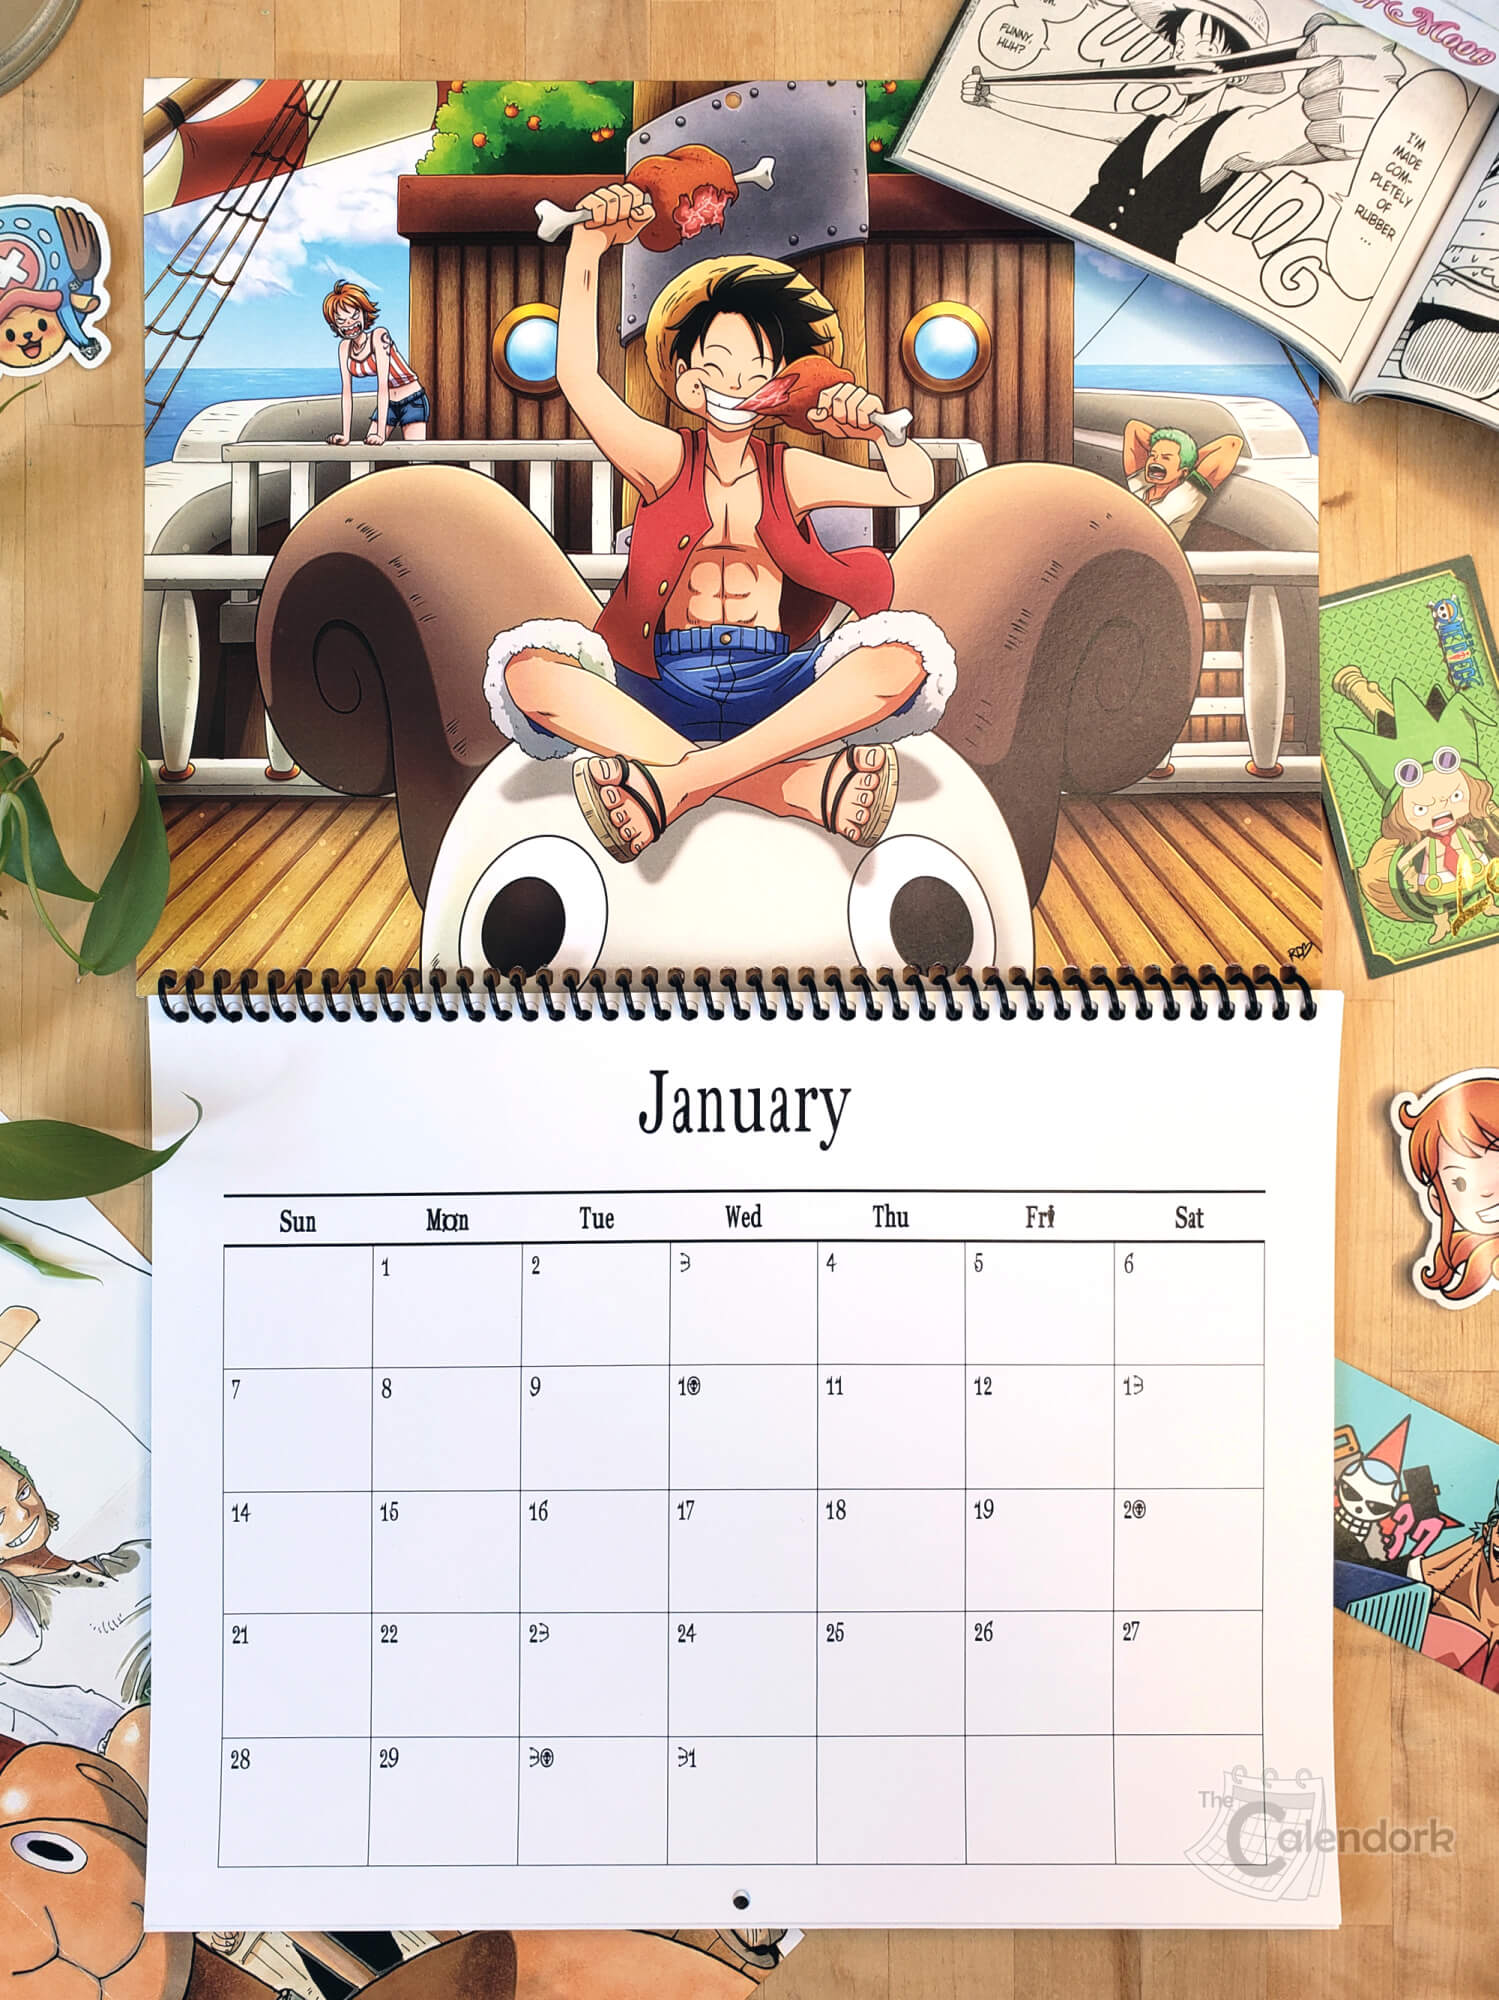 One Piece Wall Calendar